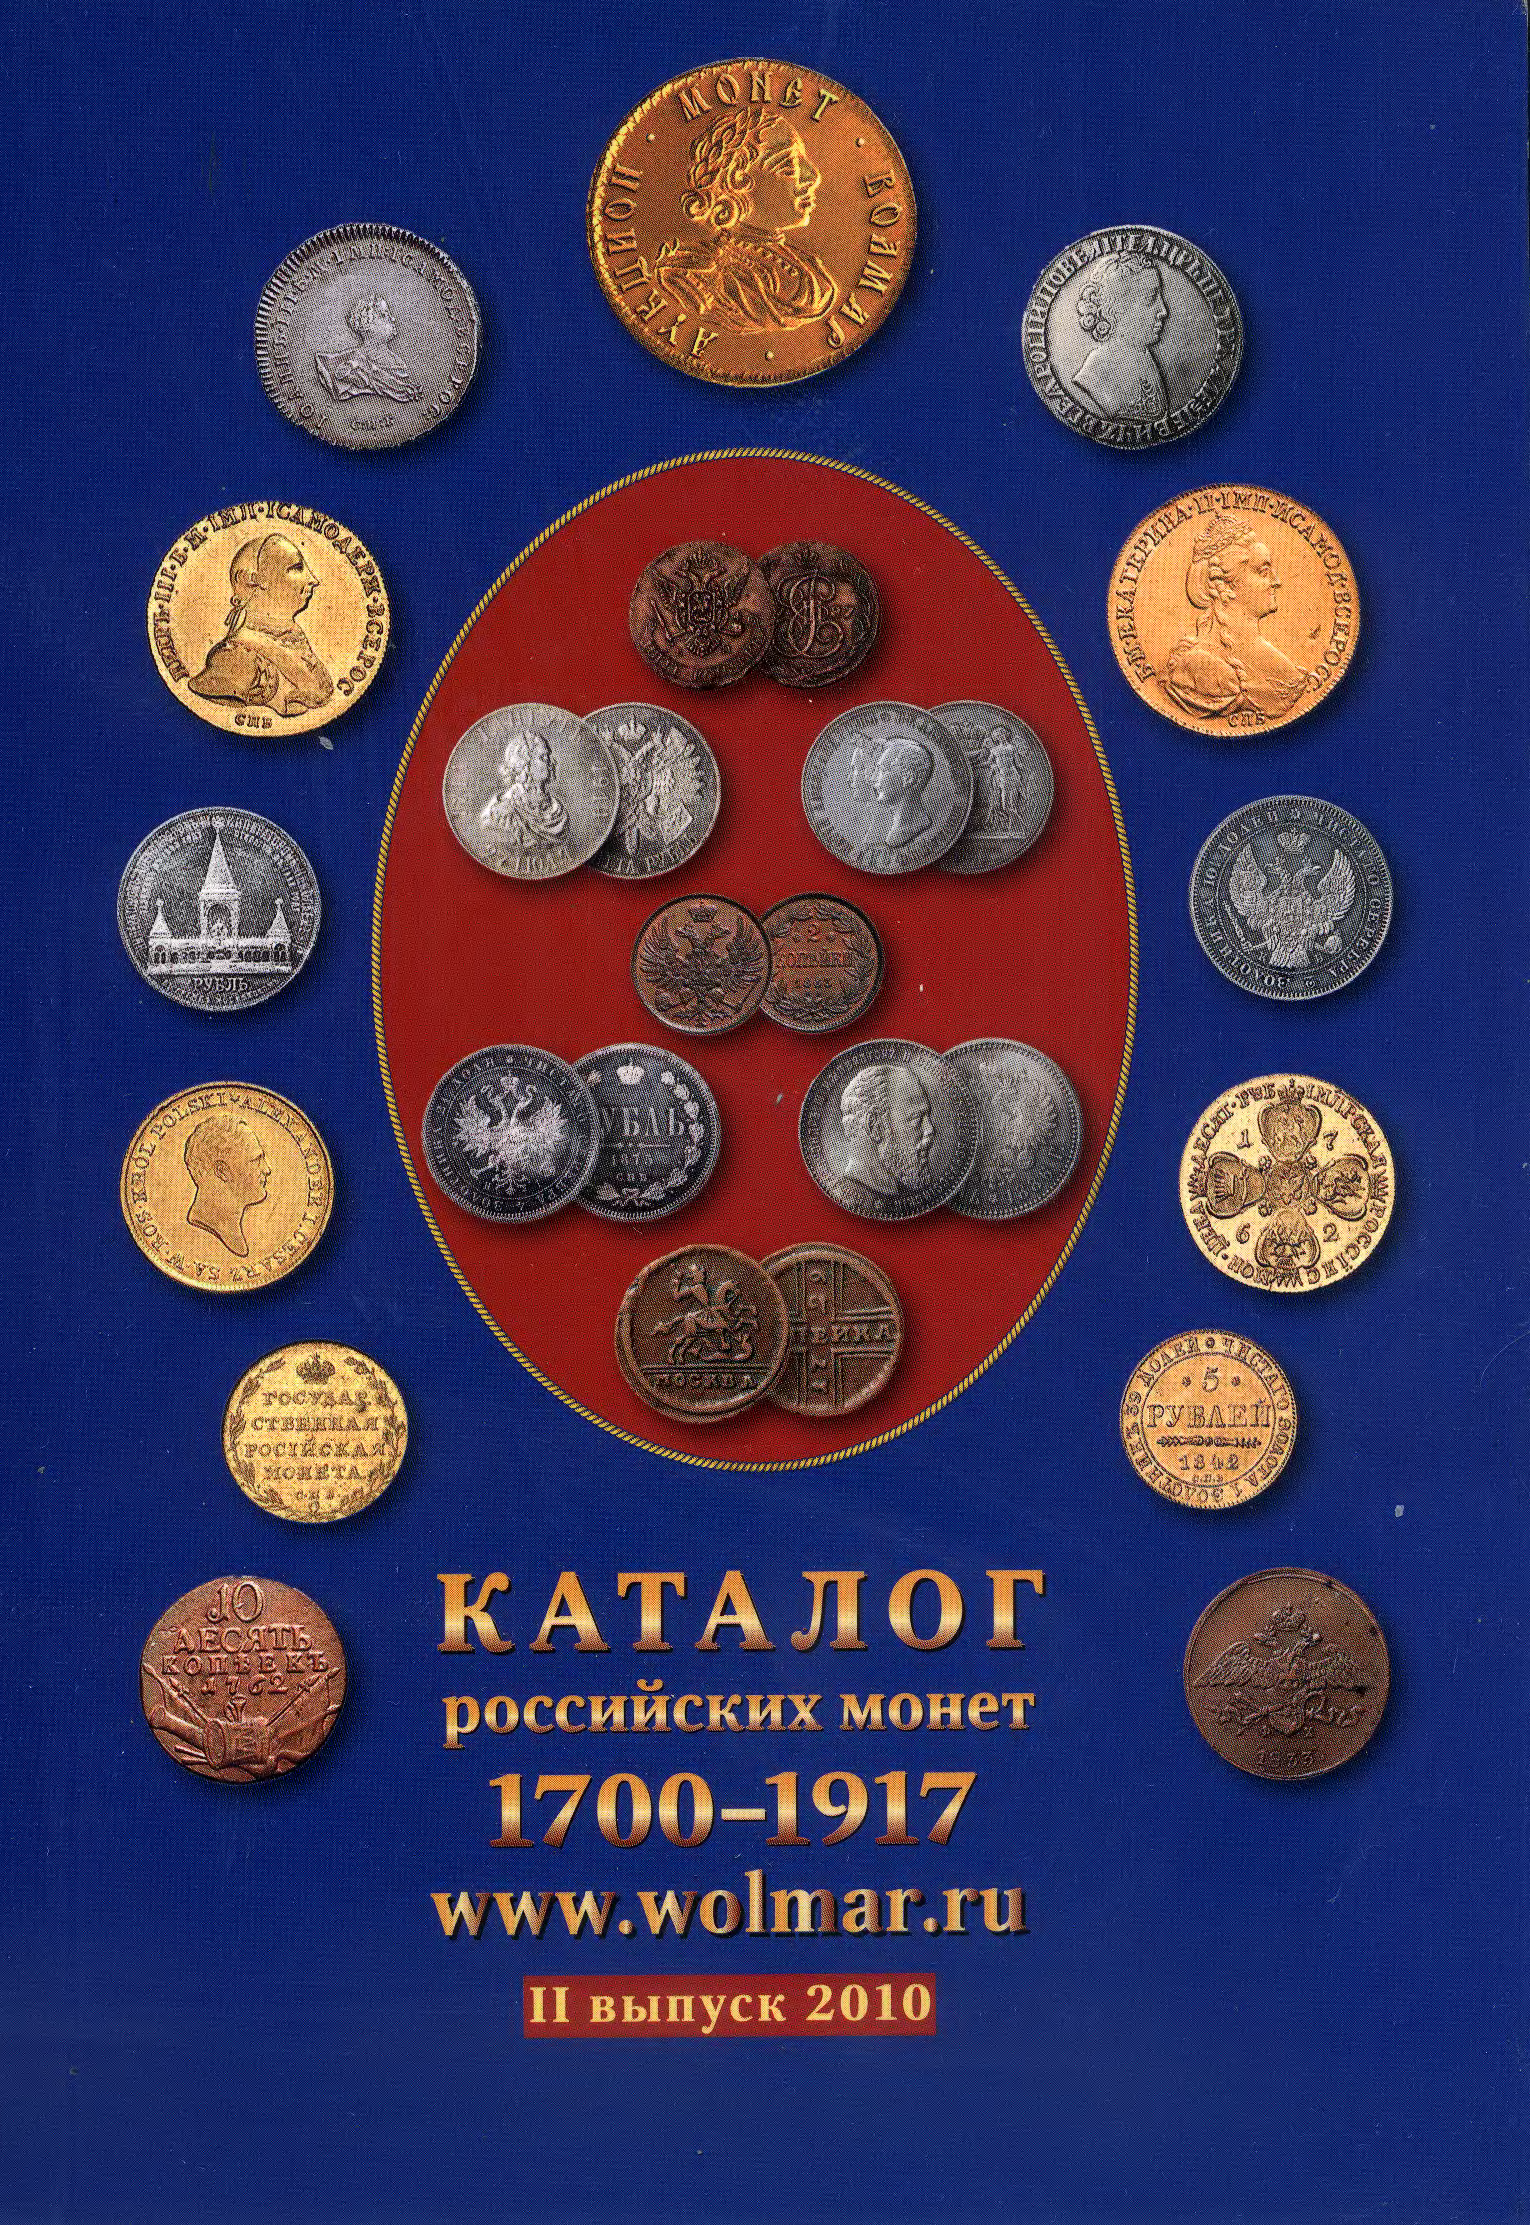 Монеты 1700 цены. Монеты царские 1700-1917. 1700-1917 Монеты обложка. Каталог монет. Каталоги по монетам.